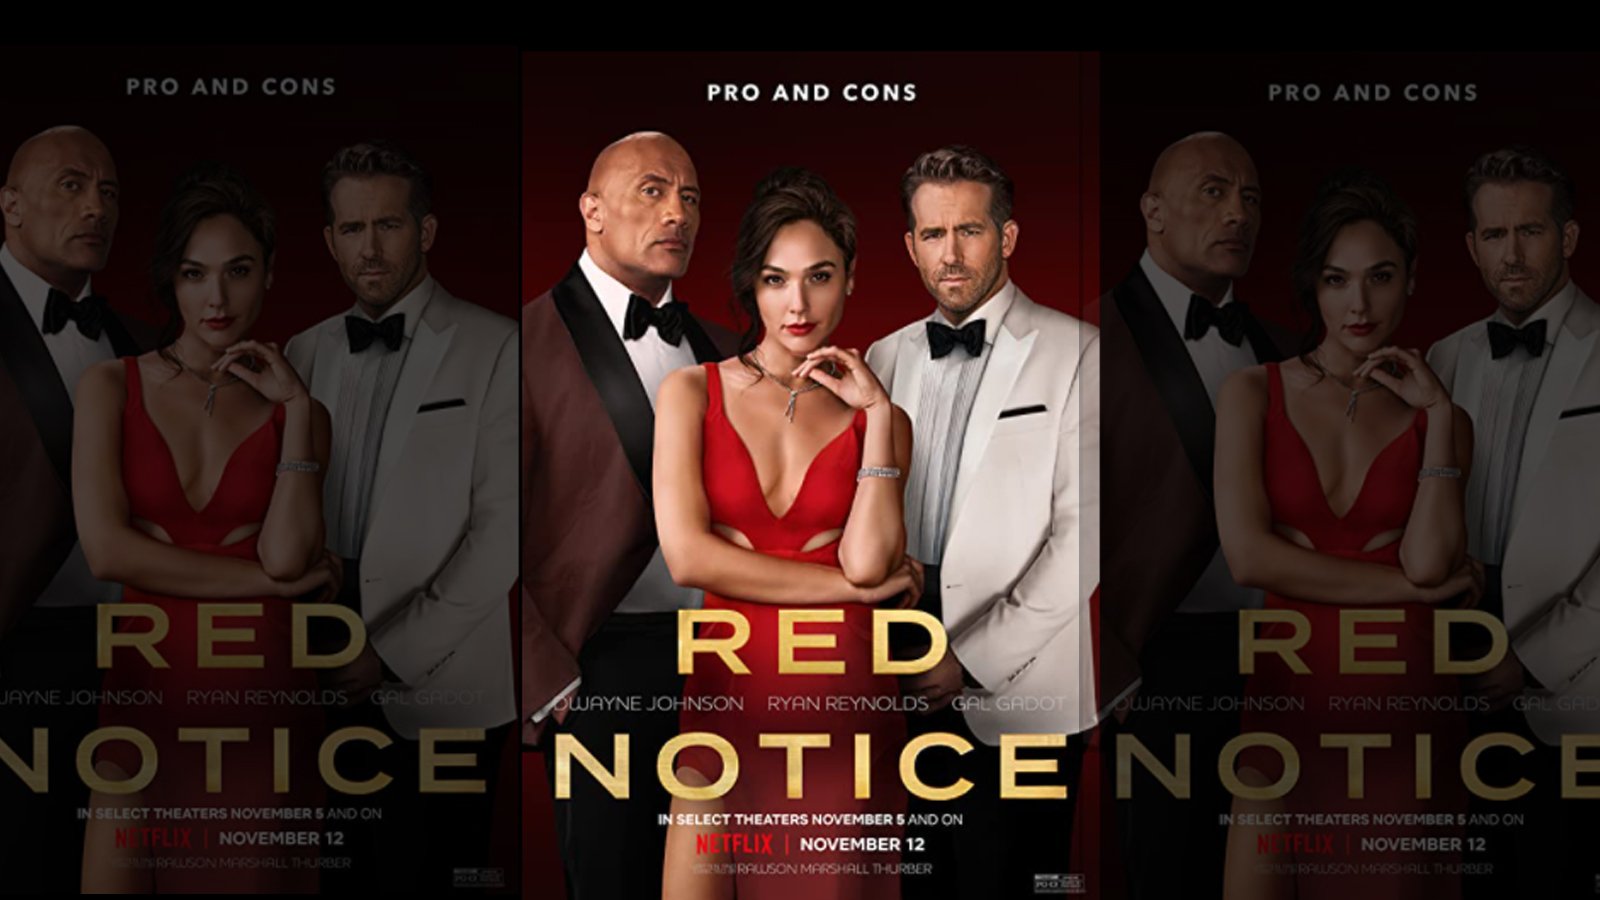 Red notice full movie sub indo